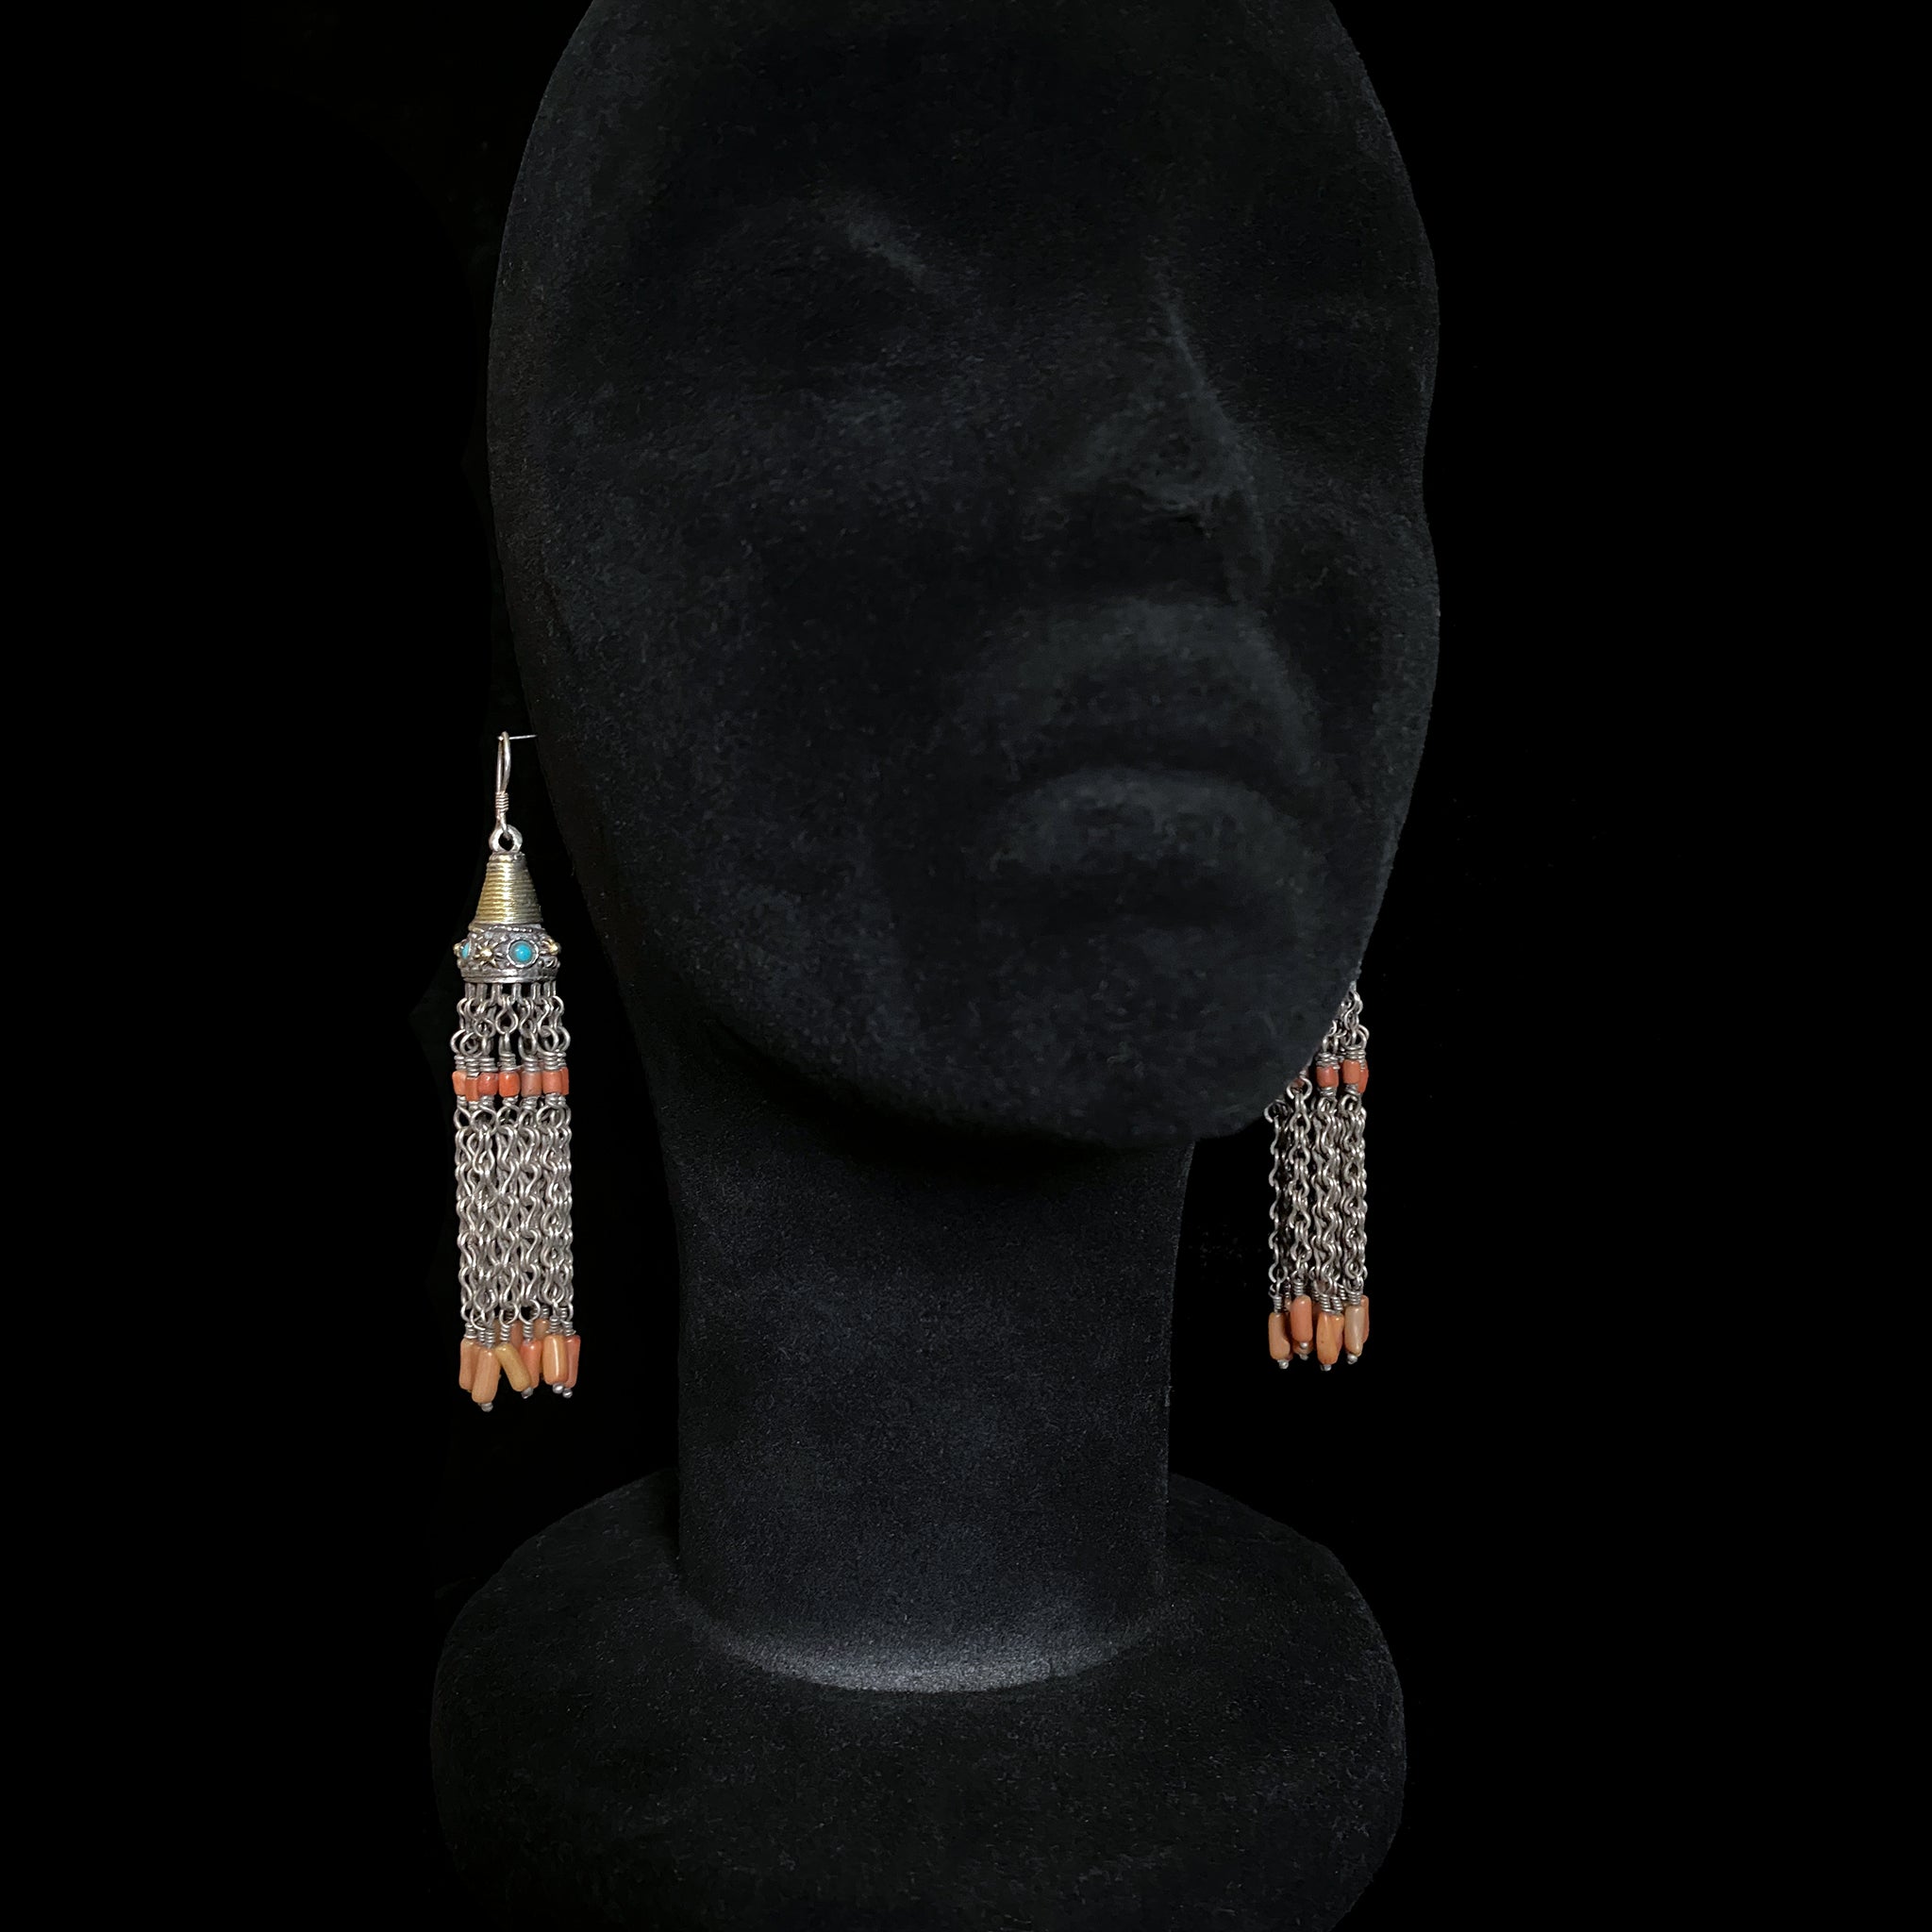 Rare Antique Silver earrings from Bukhara, Uzbekistan